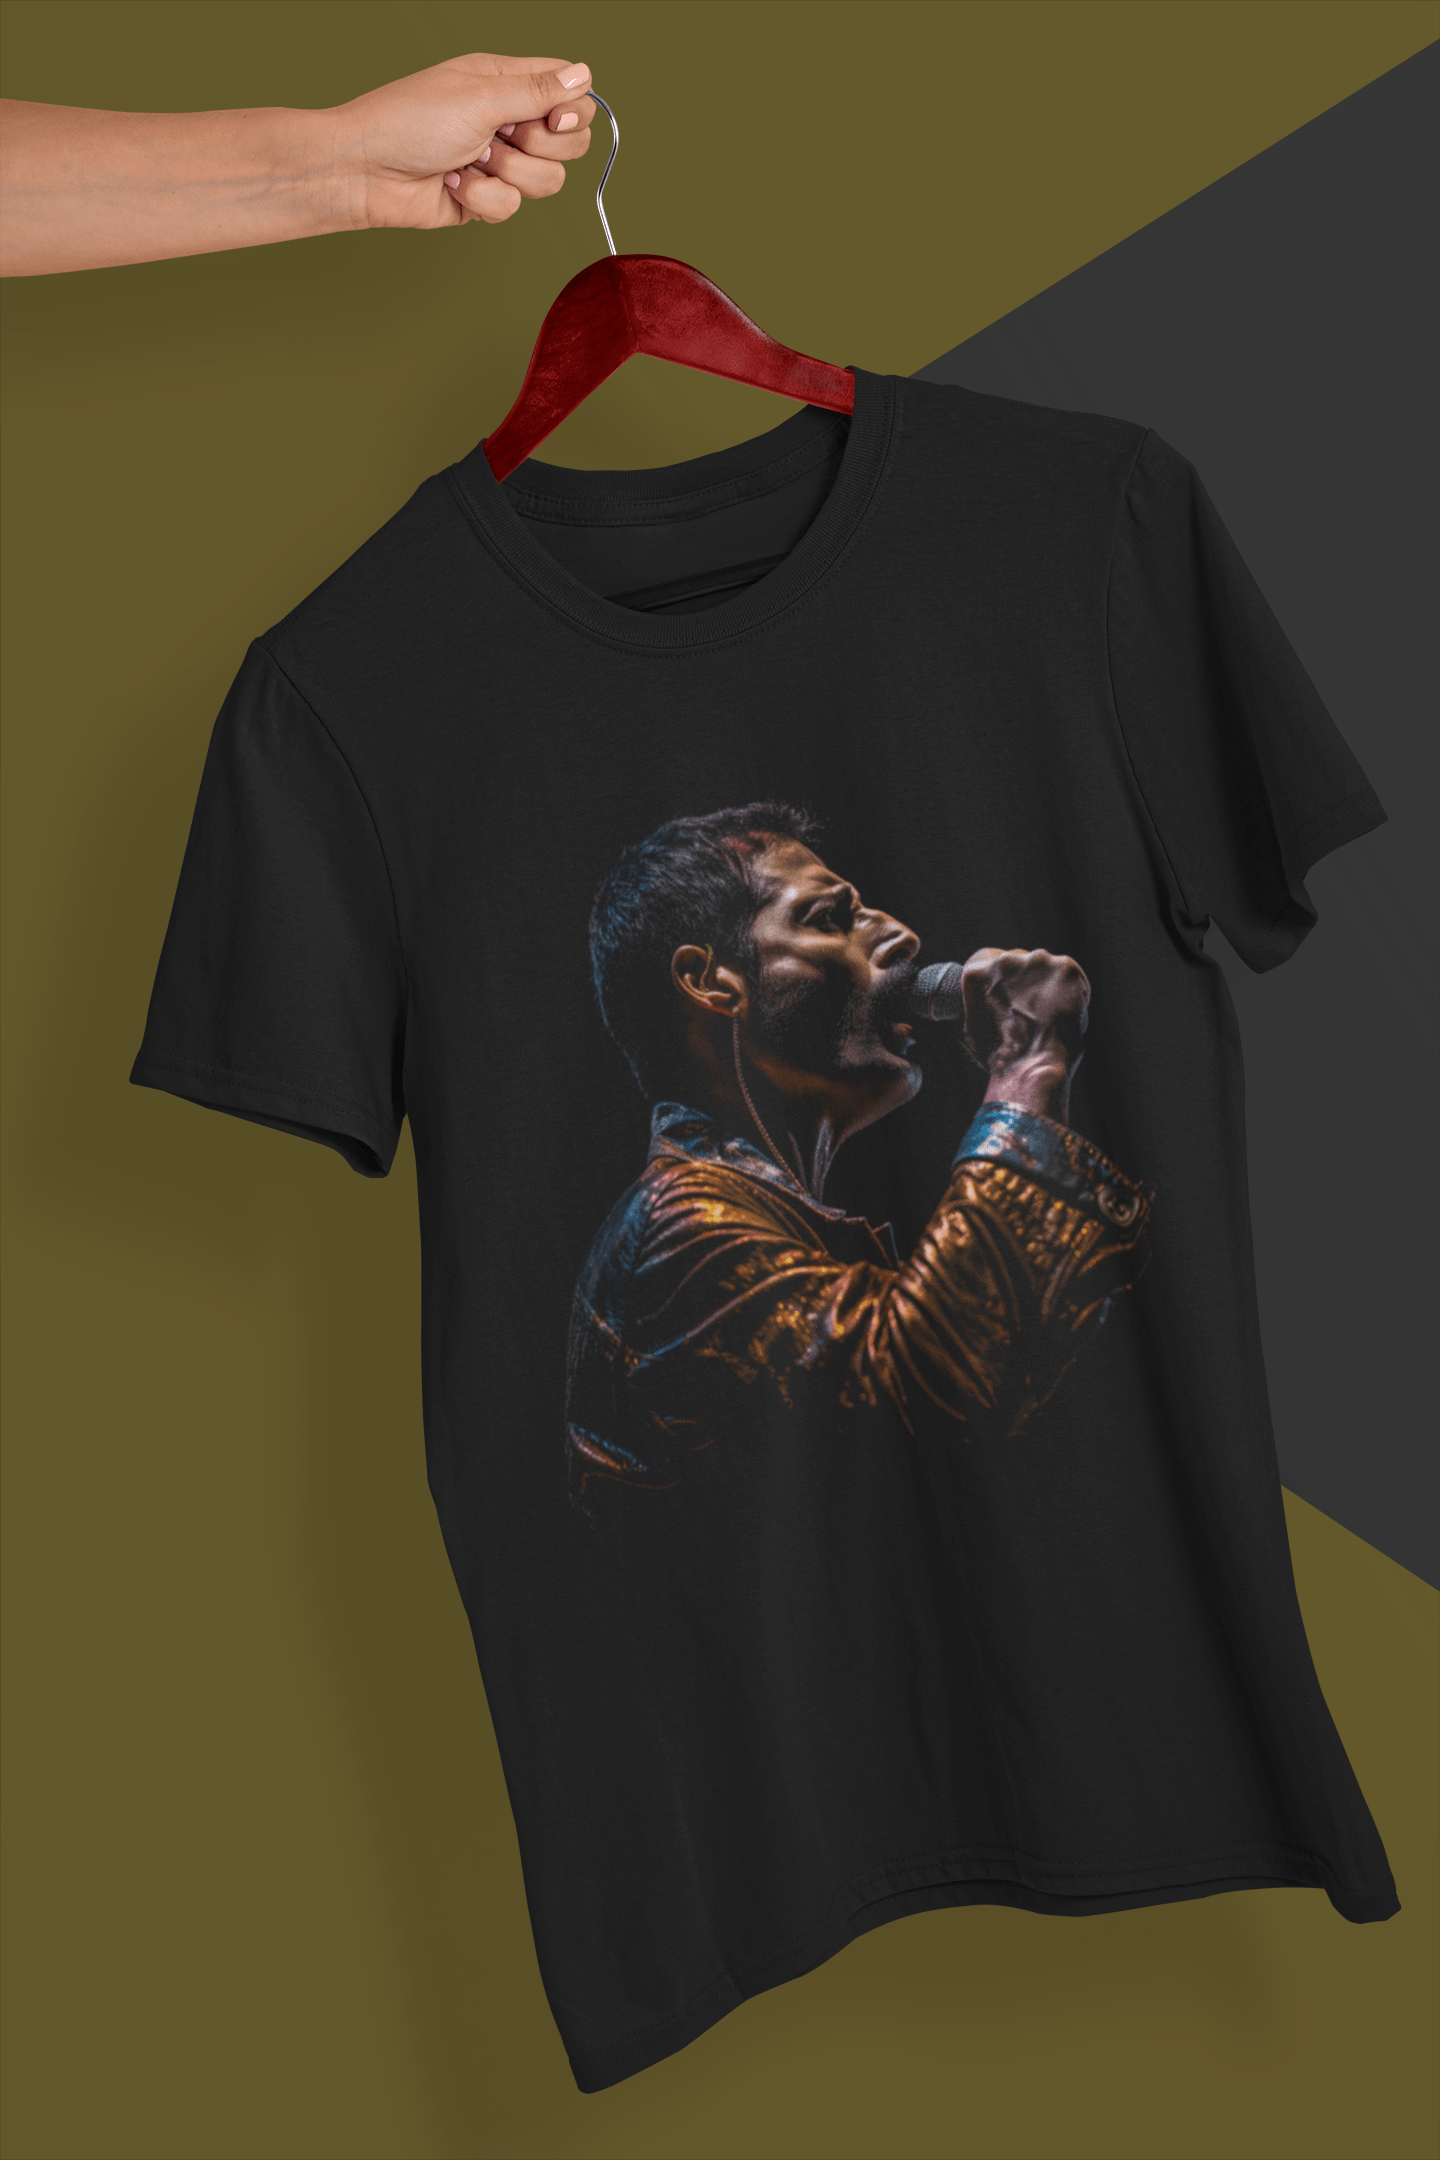 Queen / Freddie Mercury - T-Shirt